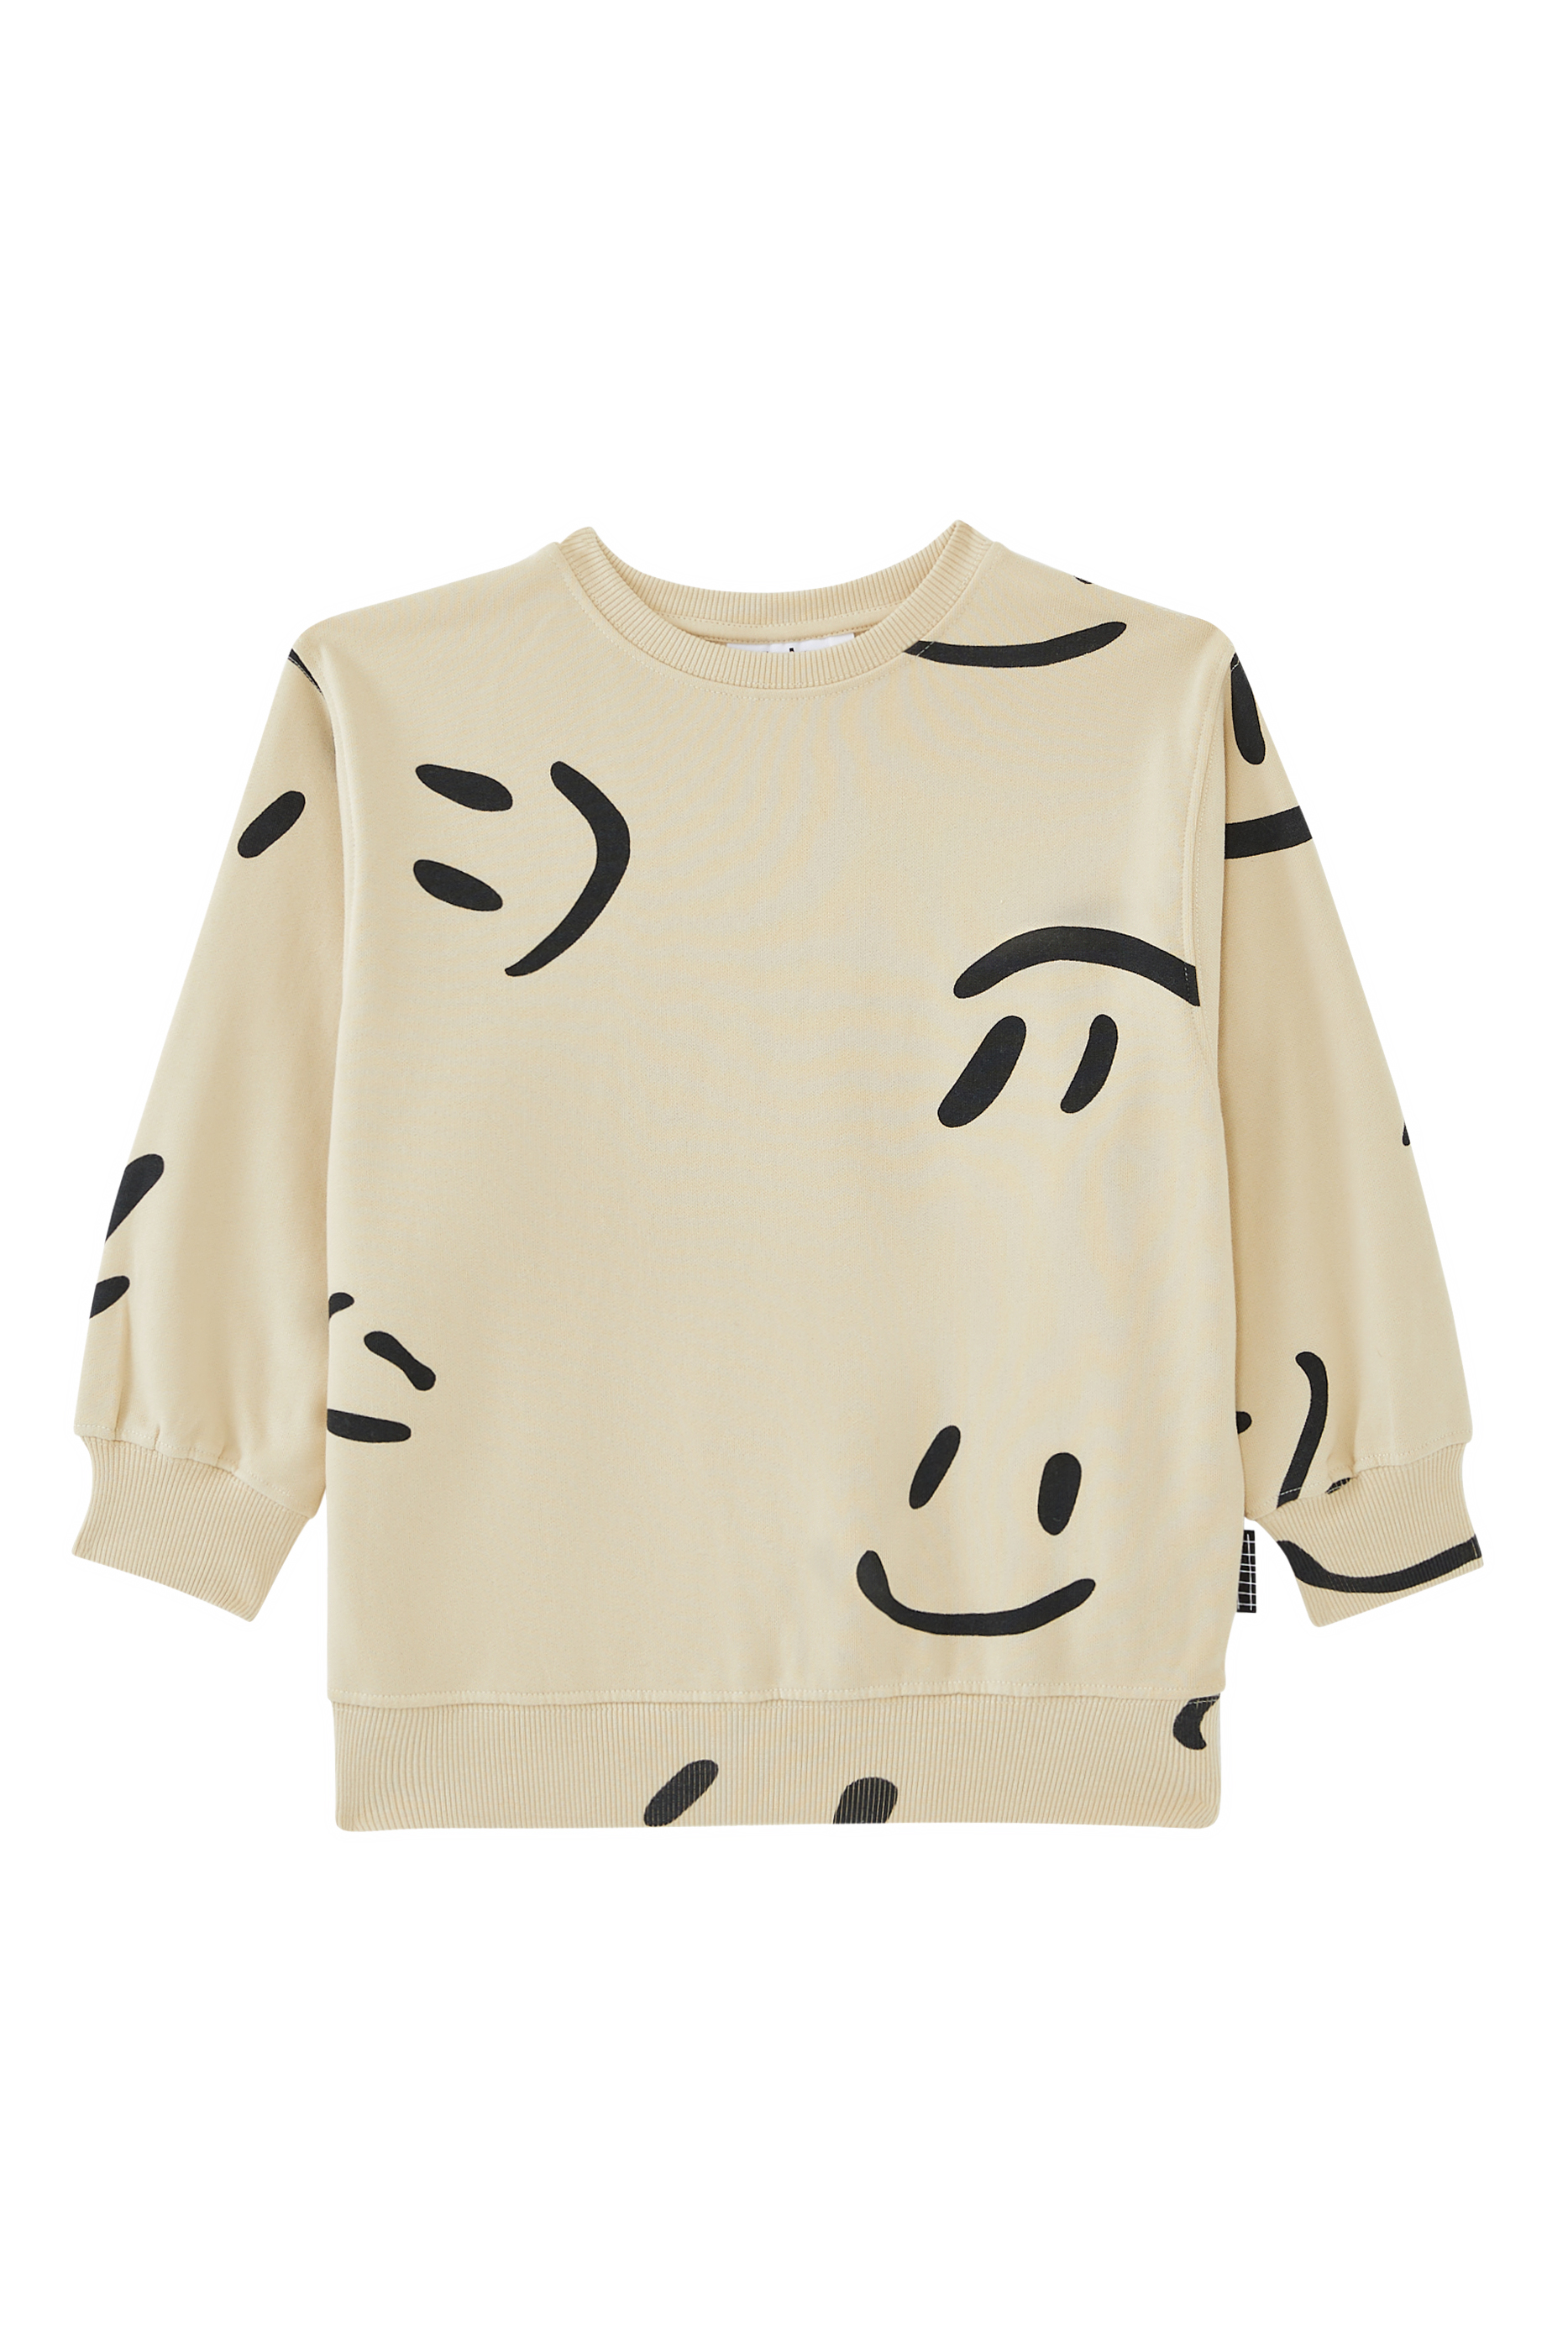 Buy Molo Kids Monti Big Smiles Sweatshirt for Boy | Bloomingdale's Kuwait